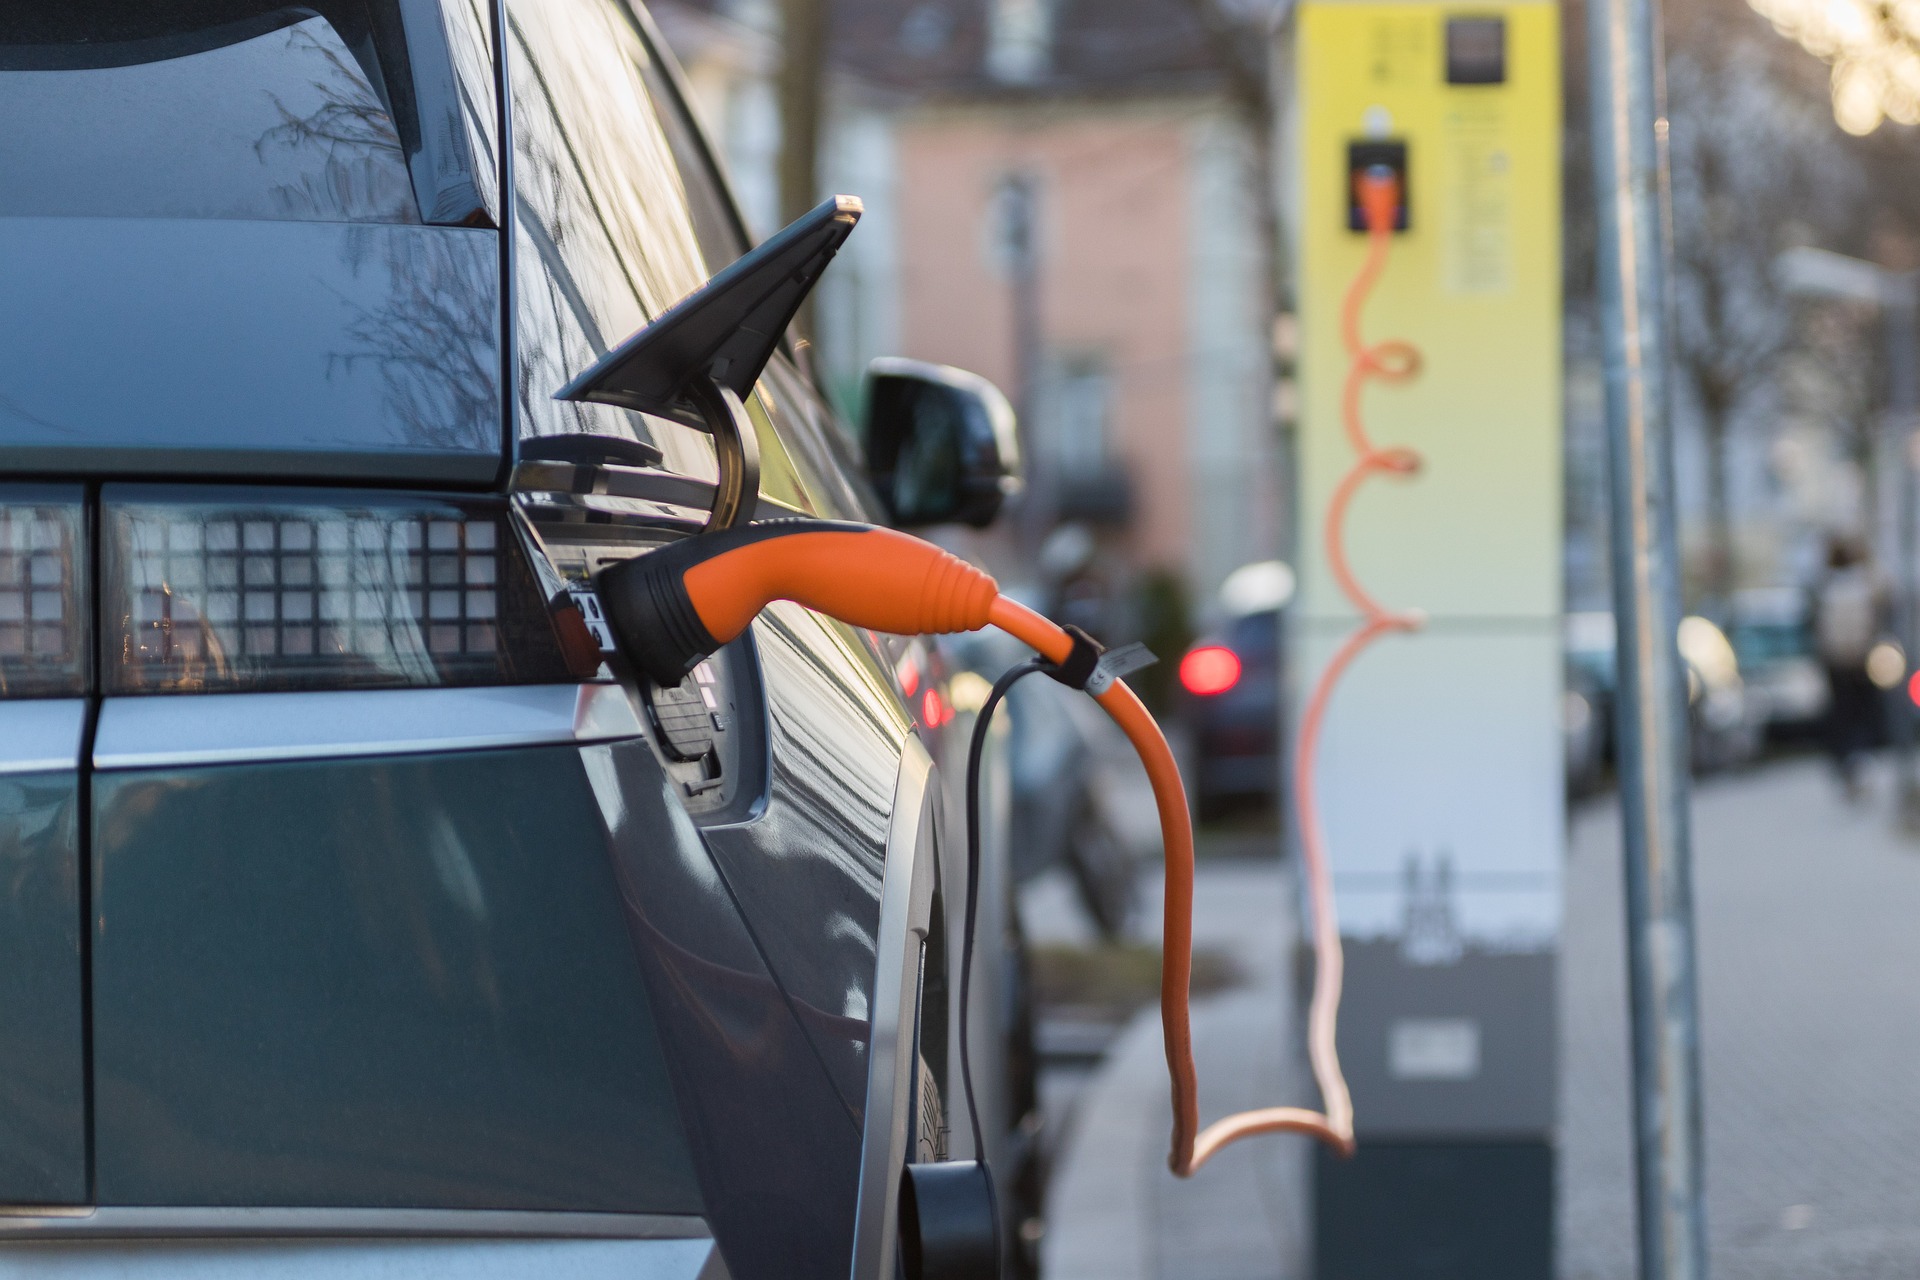 Petróleo perderá protagonismo para eletrificação no transporte até 2050, segundo estimativas da bp. Na imagem: Carro elétrico SUV, na cor cinza escuro, conectado a carregador elétrico (Foto: Felix Müller/Pixabay)